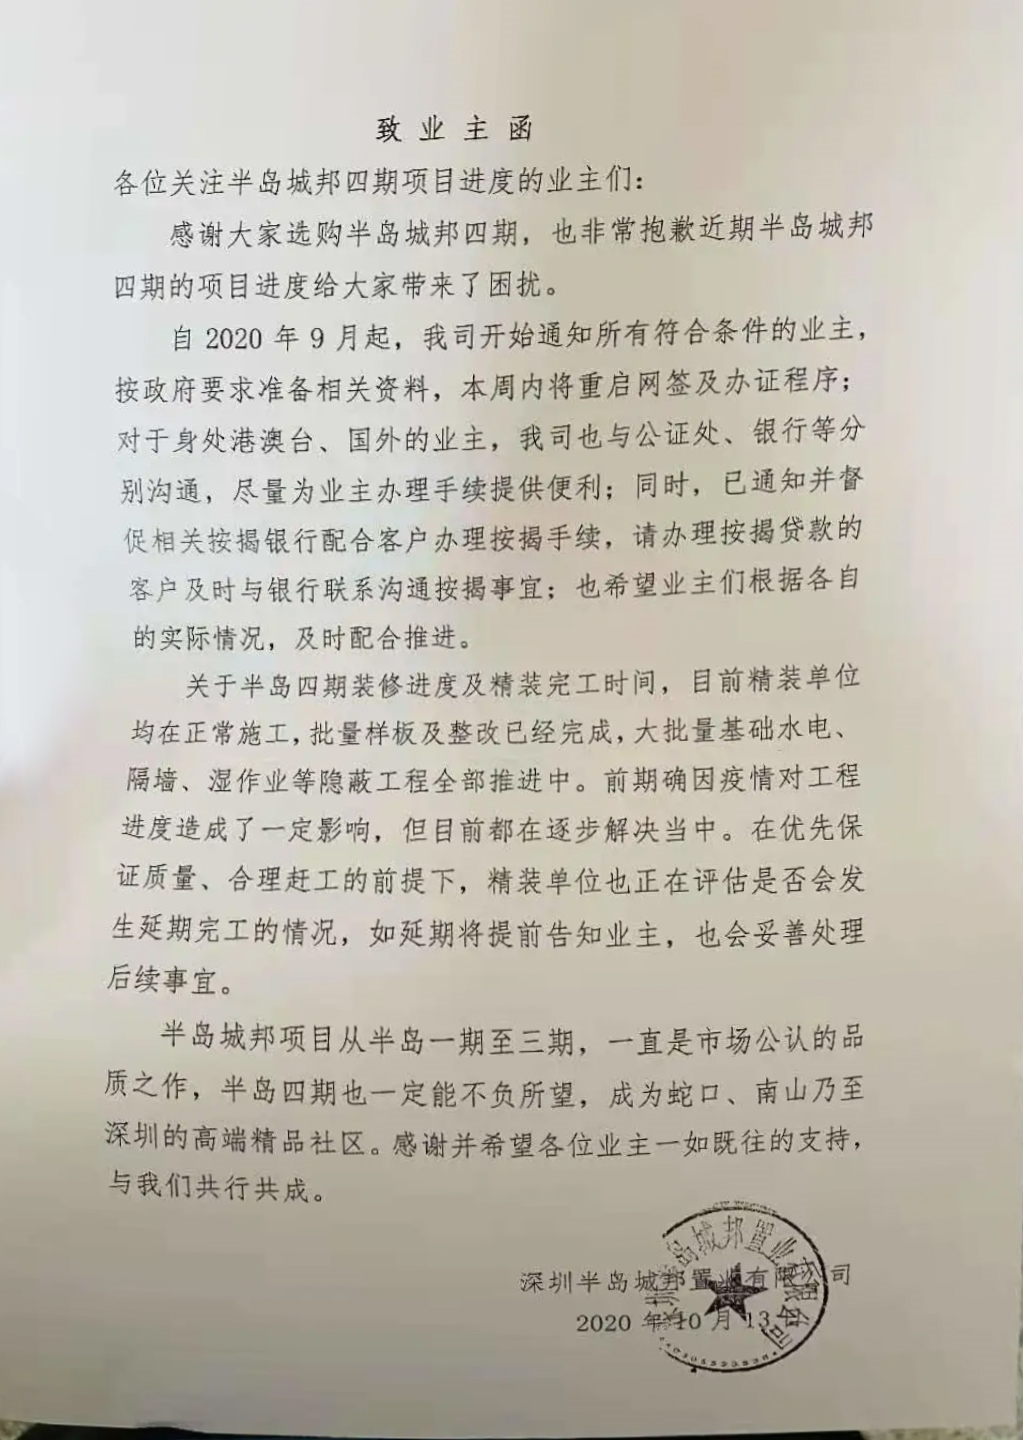 商业 正文资料显示,深圳半岛城邦置业有限公司董事长廖小梅2018年12月